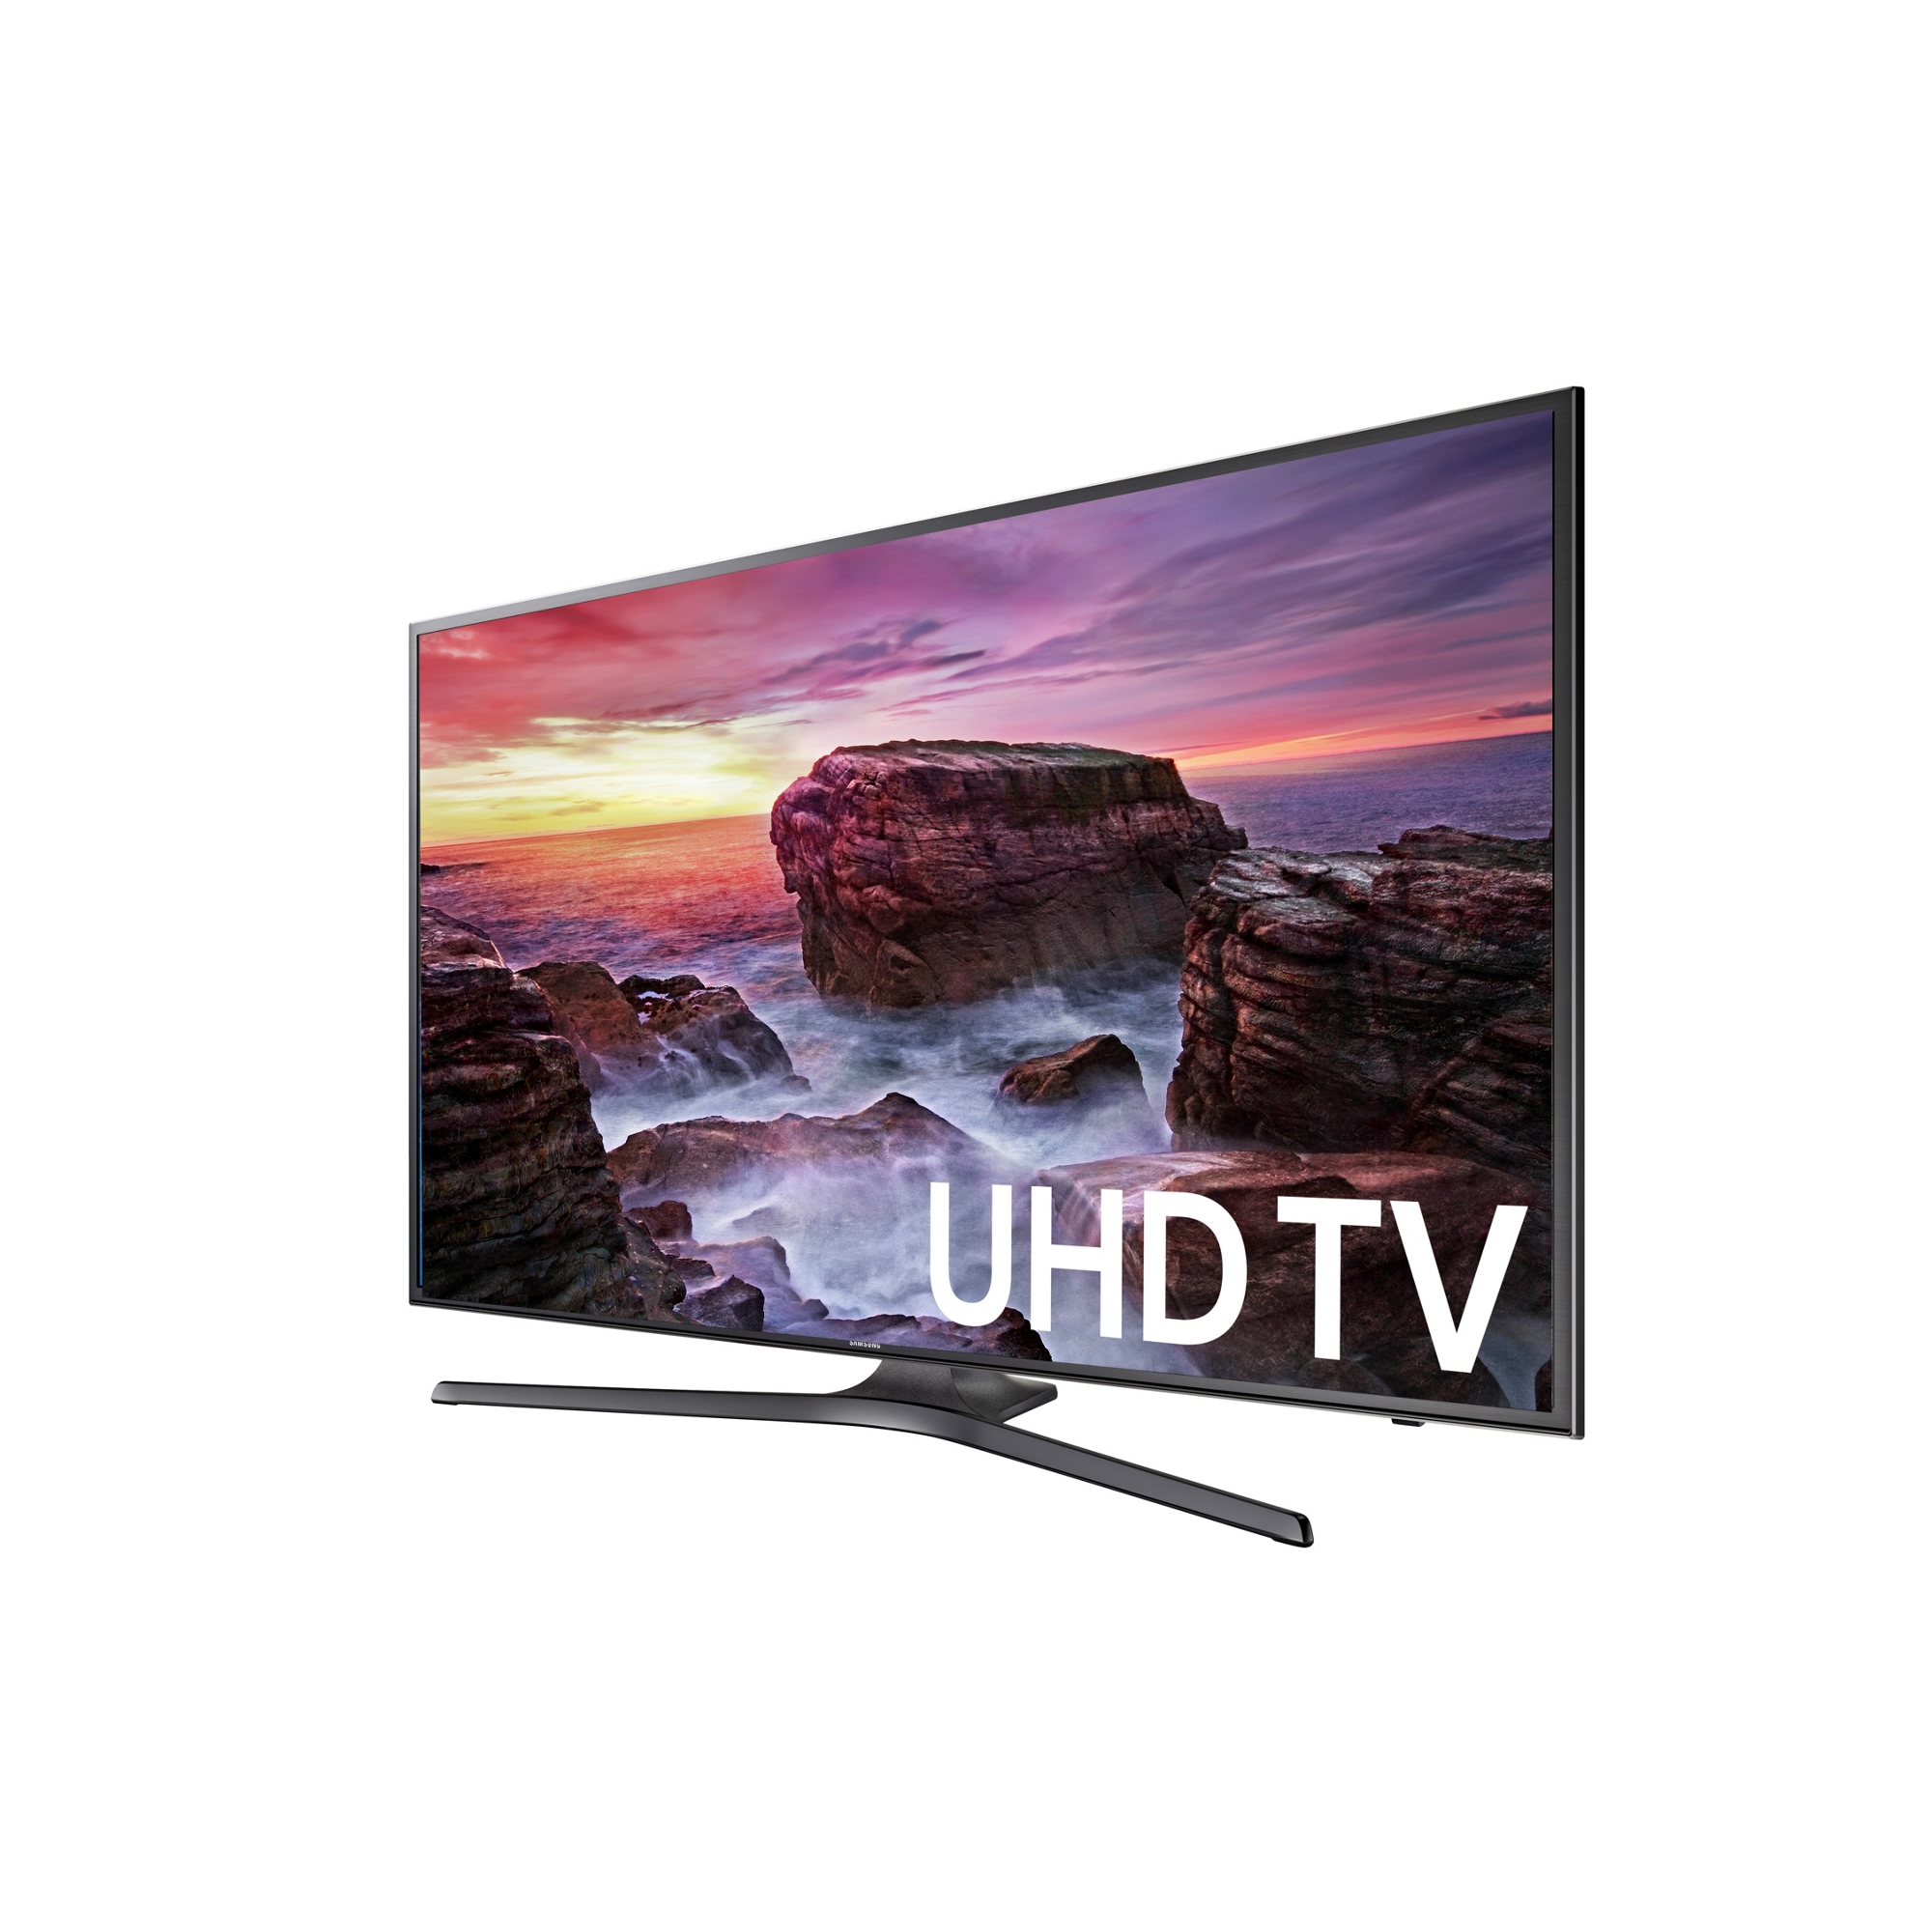 4K UHD Smart LED TV - 40 Class (39.5 Diag)